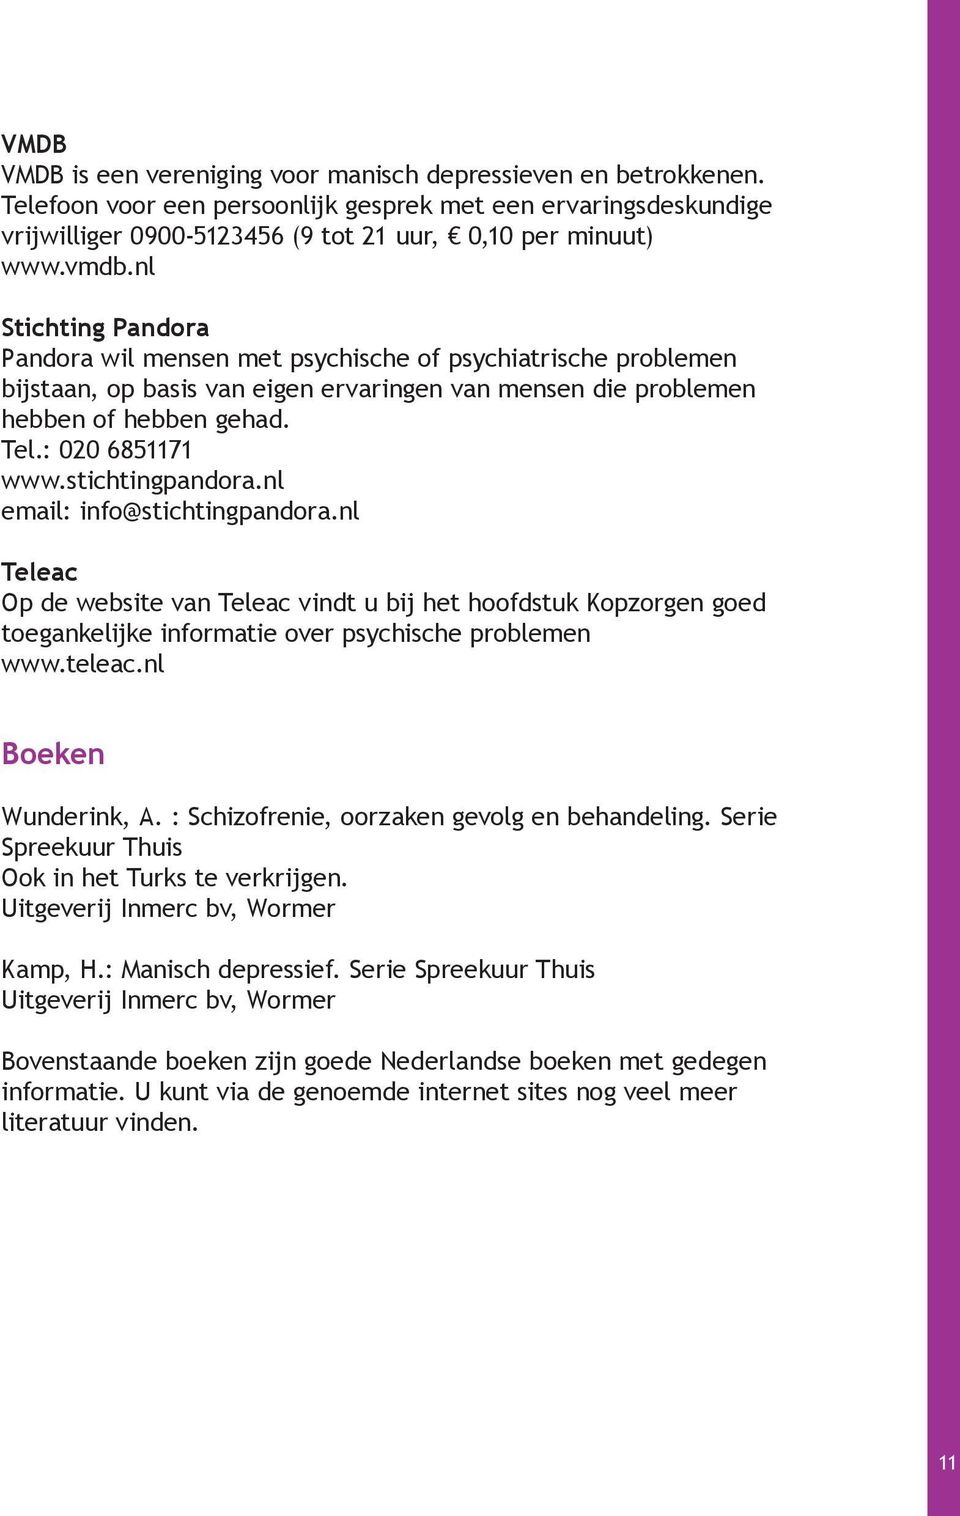 stichtingpandora.nl email: info@stichtingpandora.nl Teleac Op de website van Teleac vindt u bij het hoofdstuk Kopzorgen goed toegankelijke informatie over psychische problemen www.teleac.